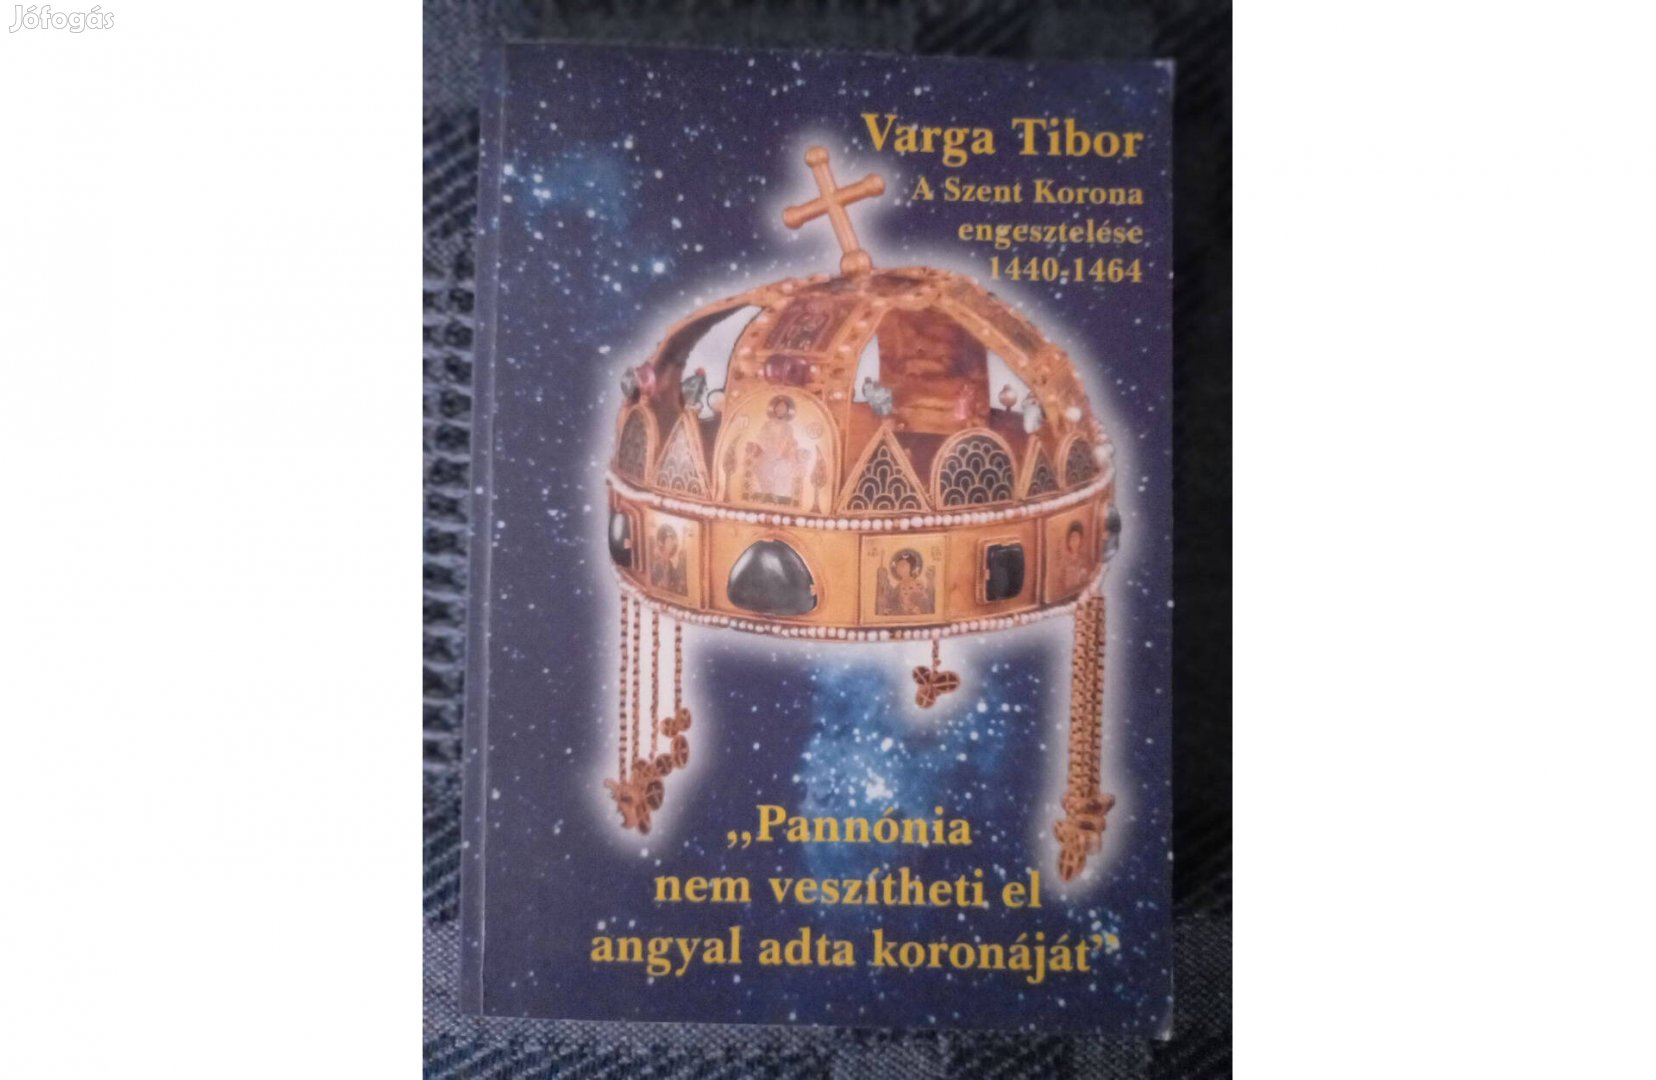 Varga Tibor: A Szent Korona. című könyv dedikáltan eladó